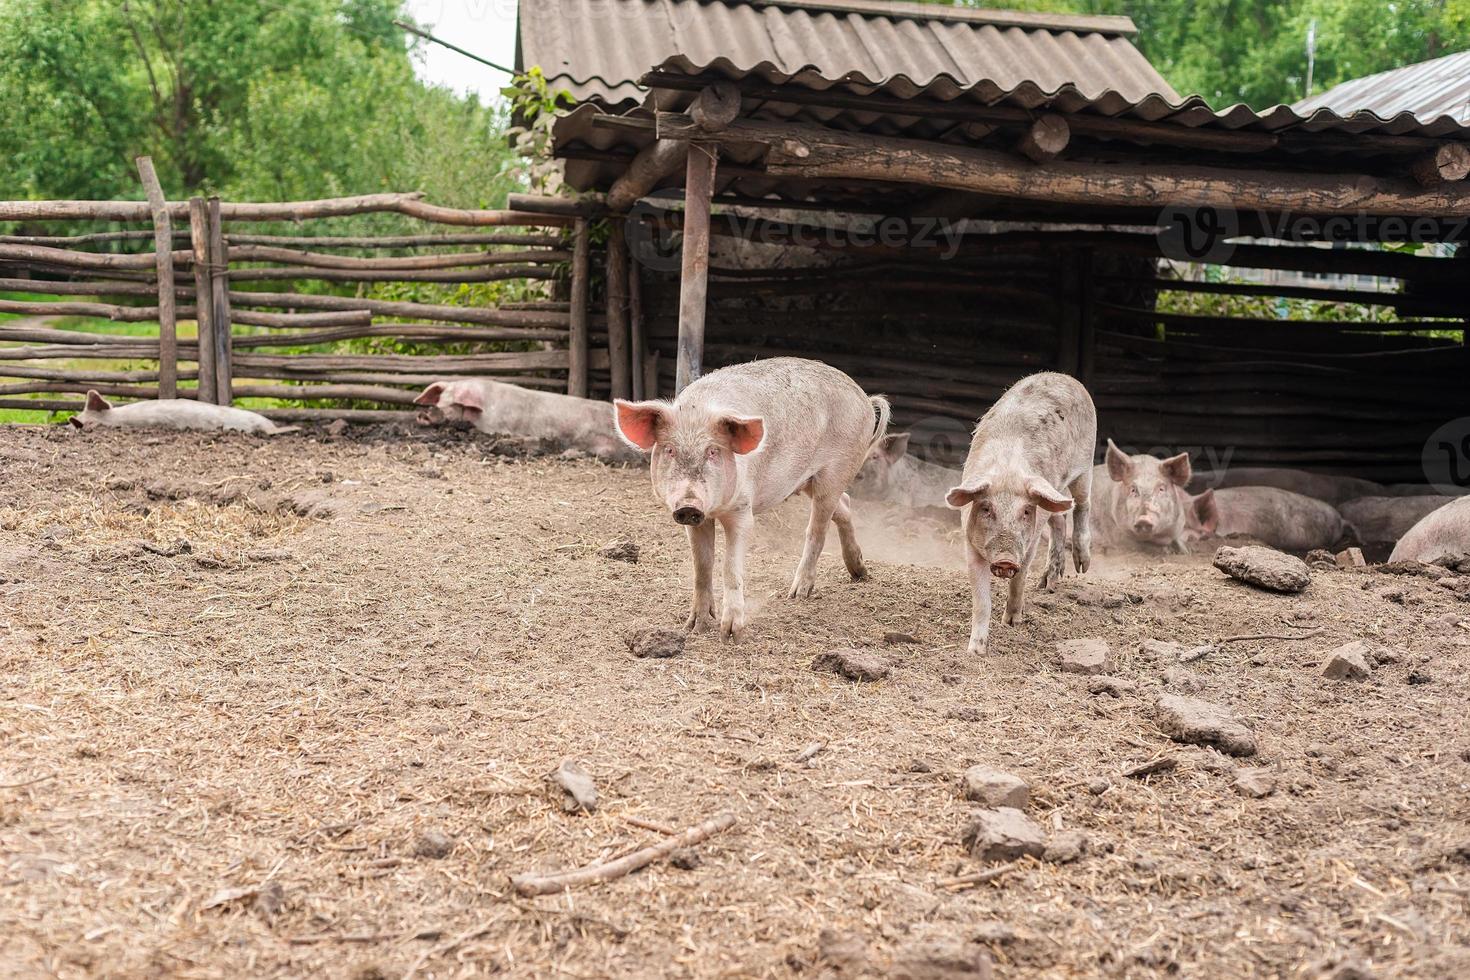 gris jordbruk höjning och föder upp av inhemsk grisar foto